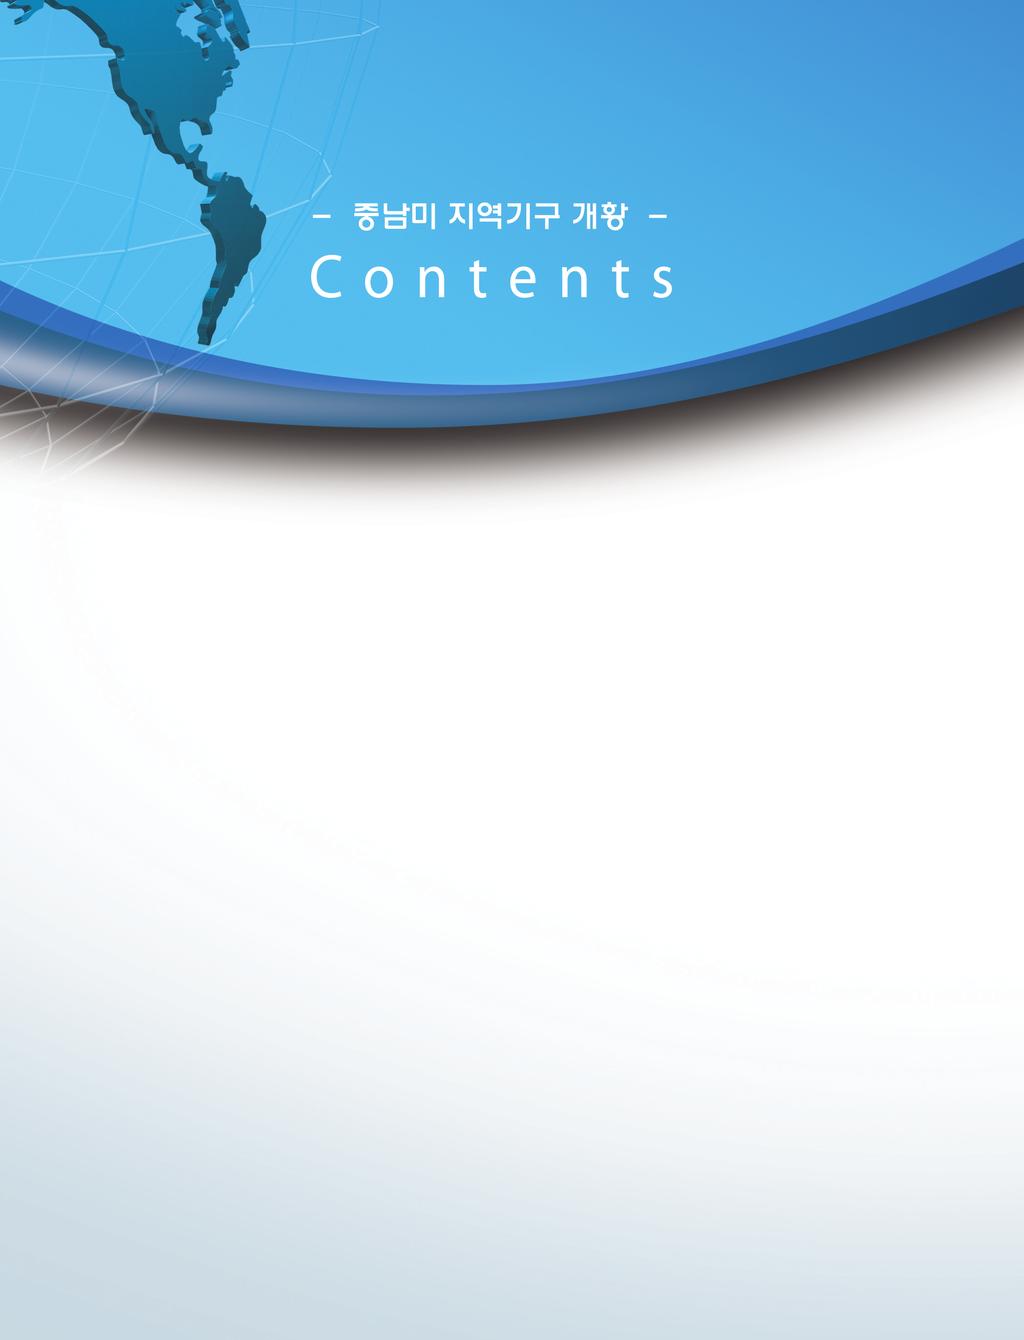 지역개황-내지-i-4 2016.9.6 1:47 PM 페이지2 mac1 I. 정치분야 1. 남미국가연합(UNASUR) 6 2. 동카리브 국가기구(OECS) 11 3. 라틴아메리카의회(PARLATINO) 17 4. 라틴아메리카 카리브국가공동체(CELAC) 24 5. 미주기구(OAS/OEA) 28 6. 미주대륙을 위한 볼리바르 동맹(ALBA) 39 7.